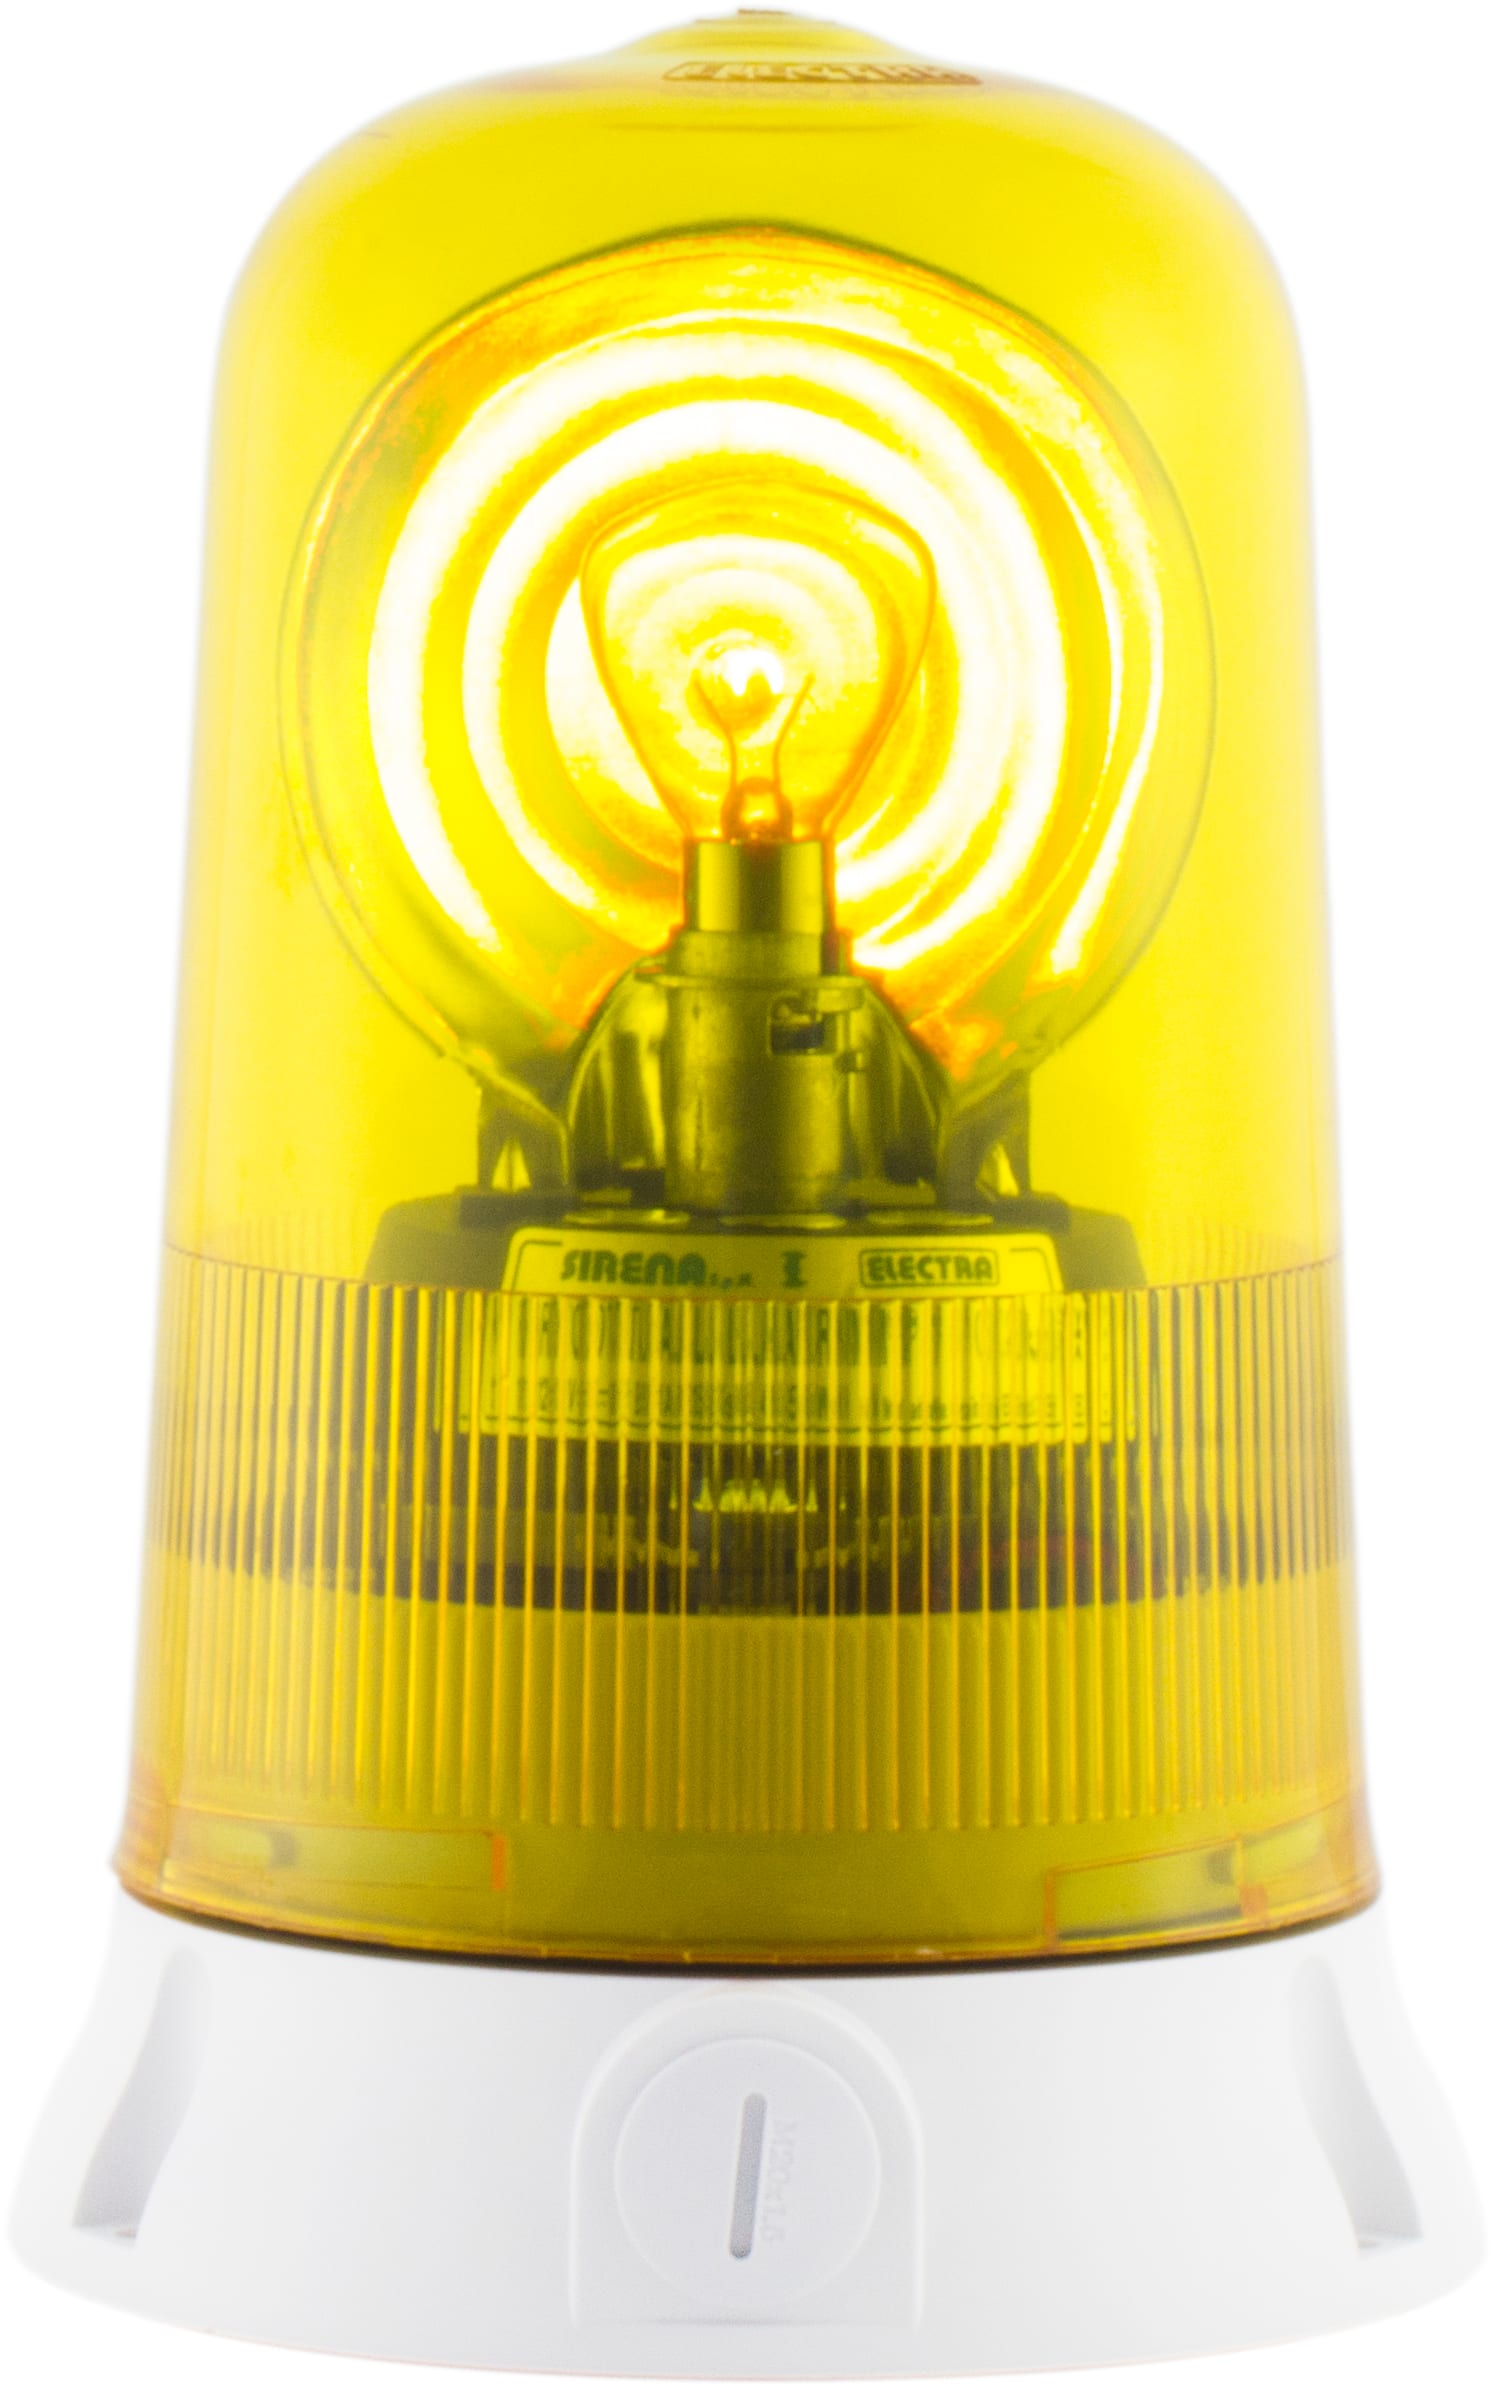 SIRENA - ROTALLARM S H1 feu ampoule halogène lumière tournante IP65 V12ACDC base grise